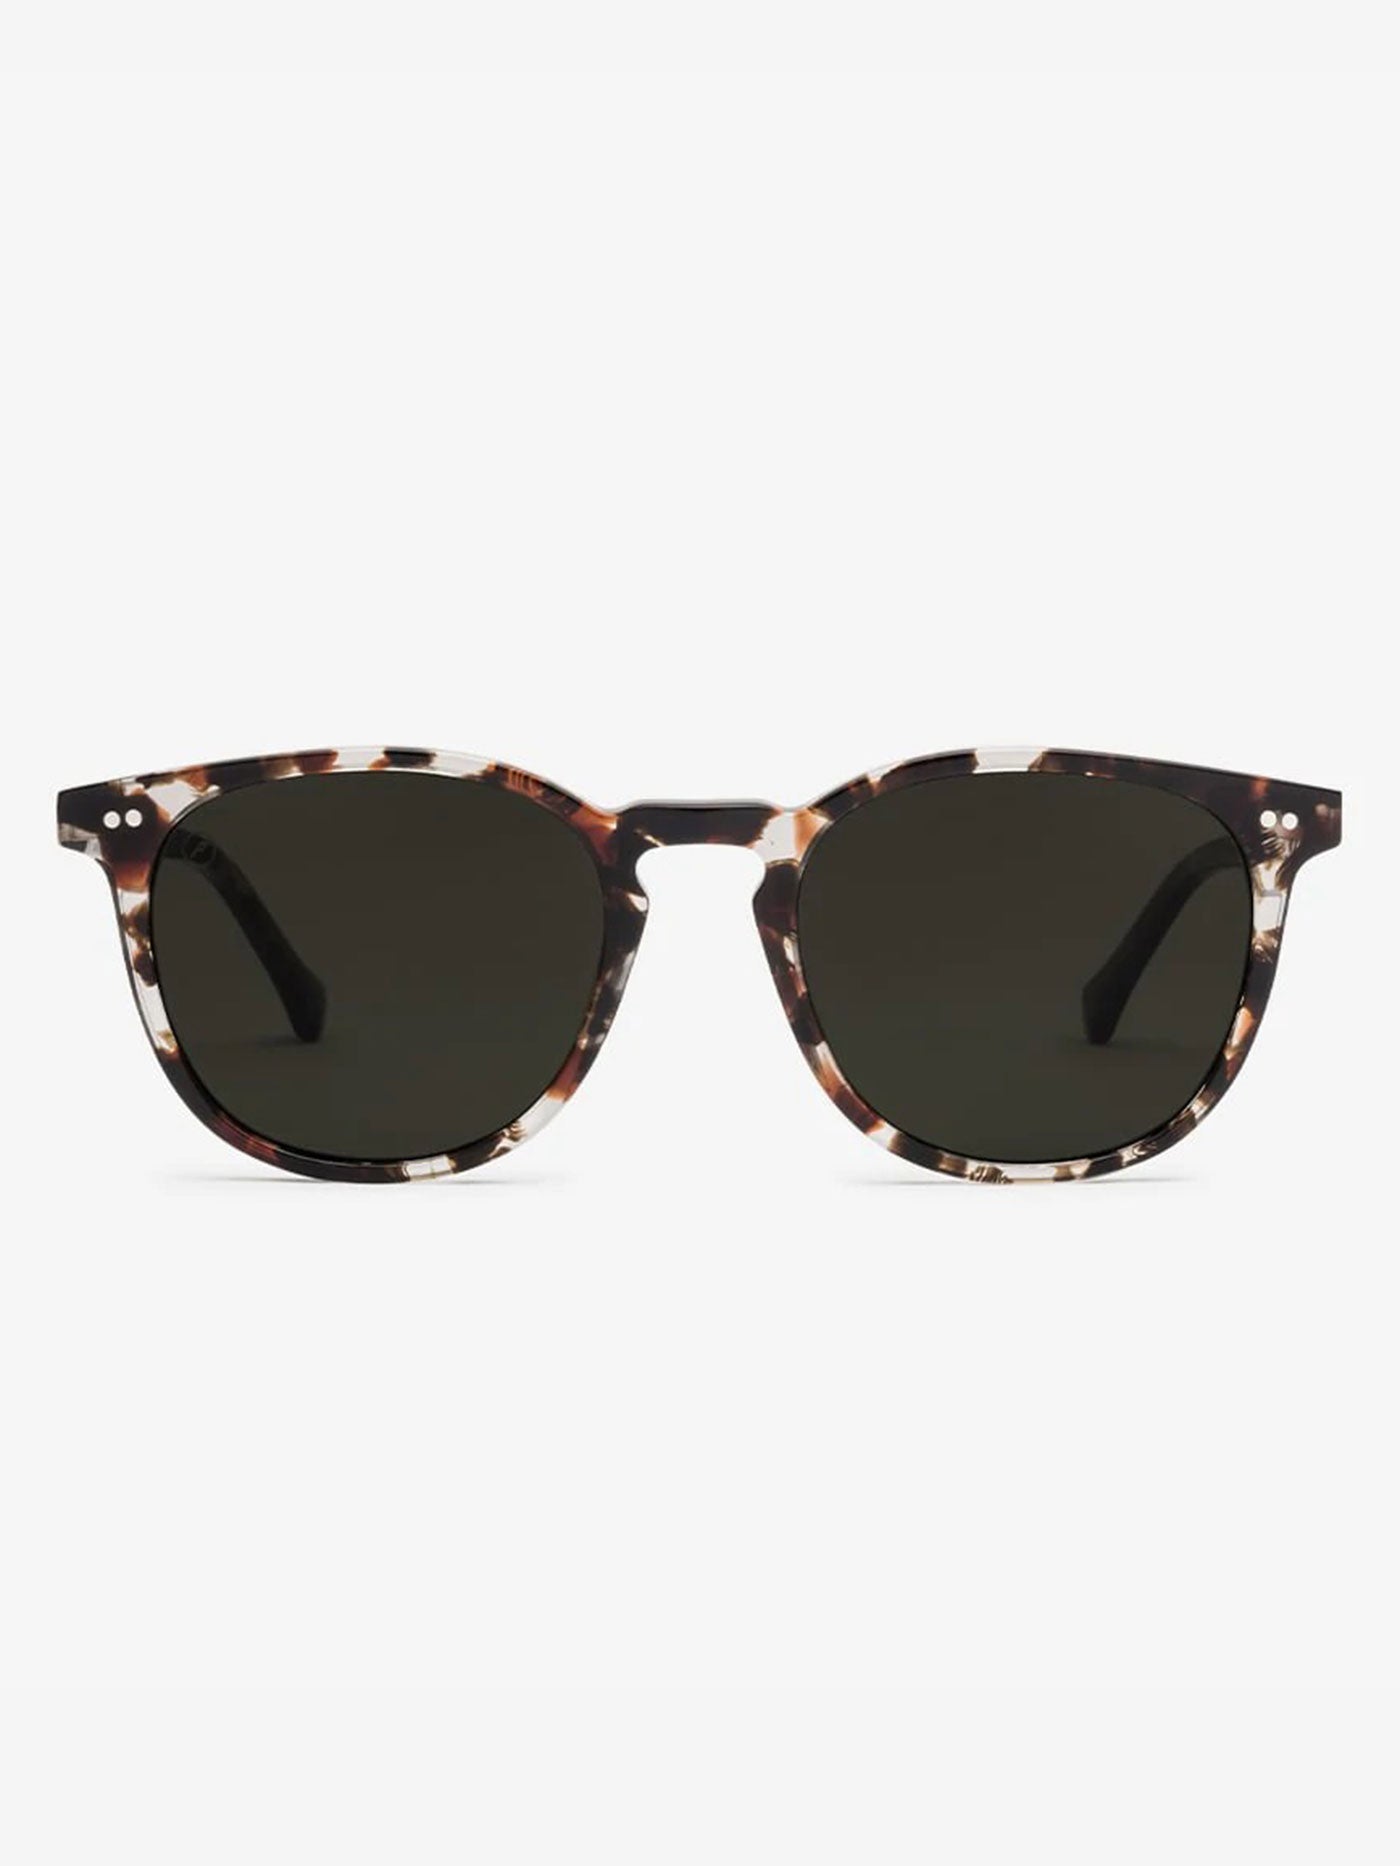 Electric Oak Moab Tortoise Sunglasses